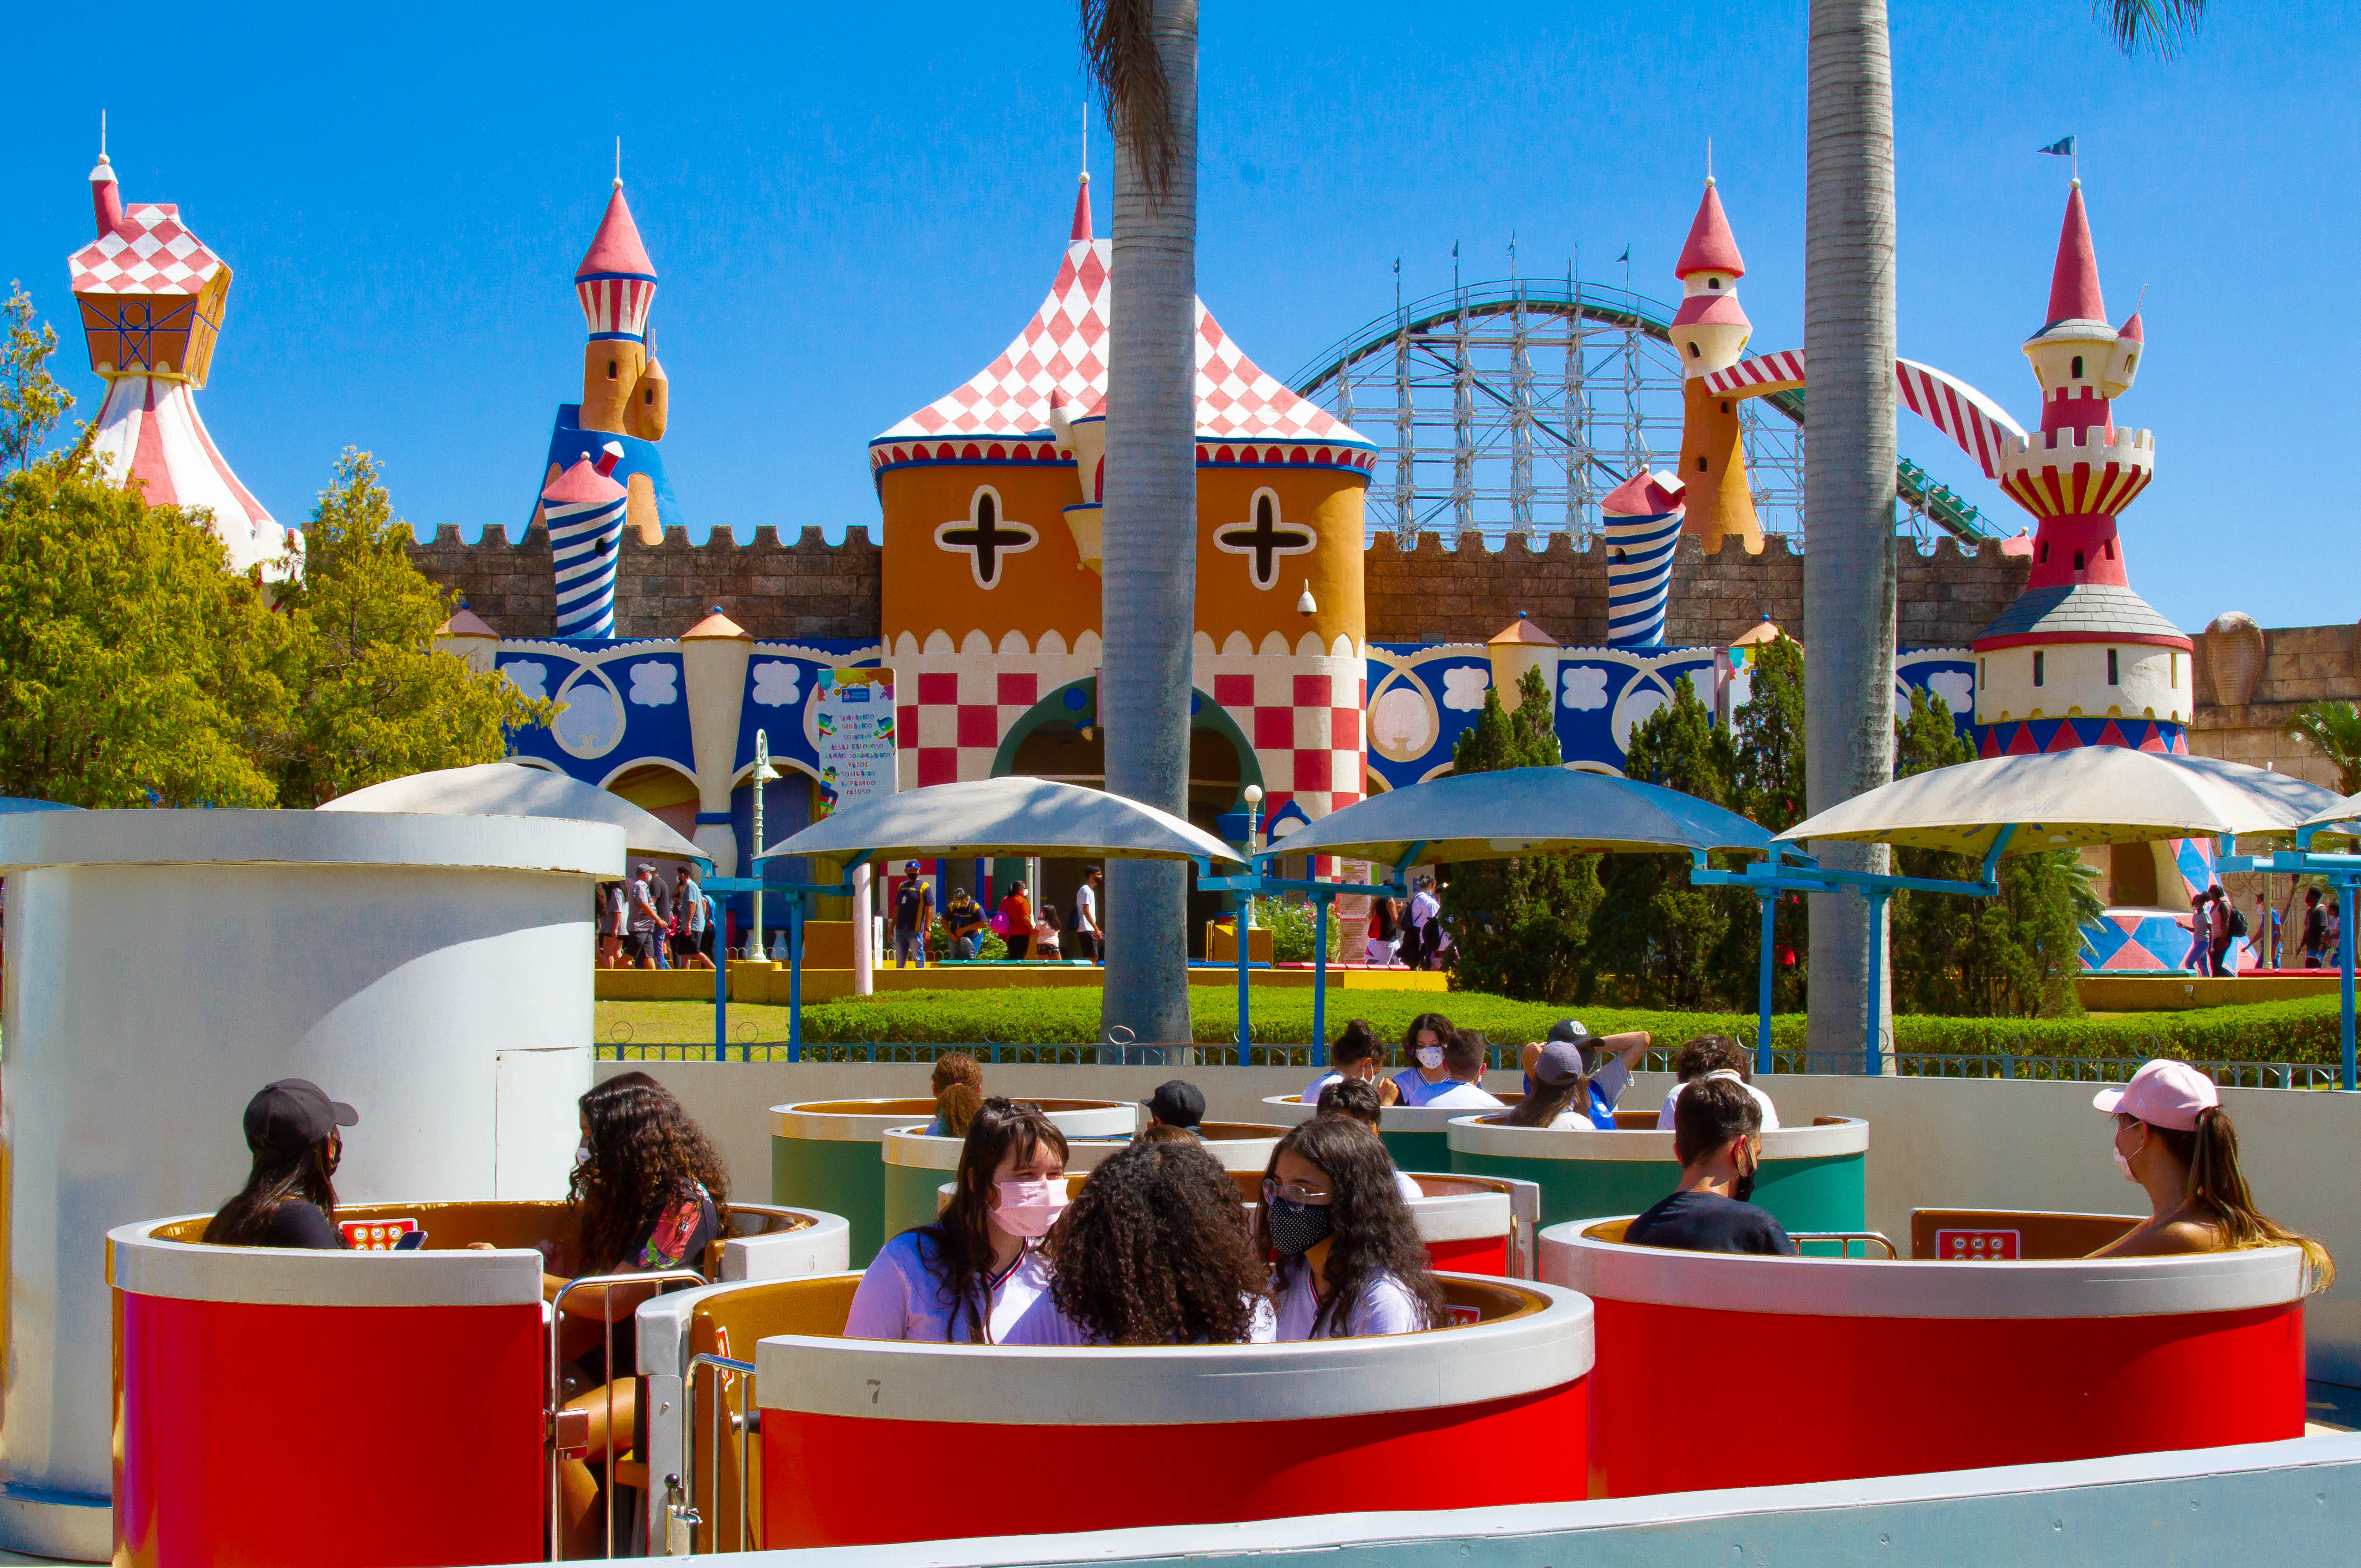 A imagem mostra crianças dentro de cadeiras que giram automaticamente no parque de diversões.